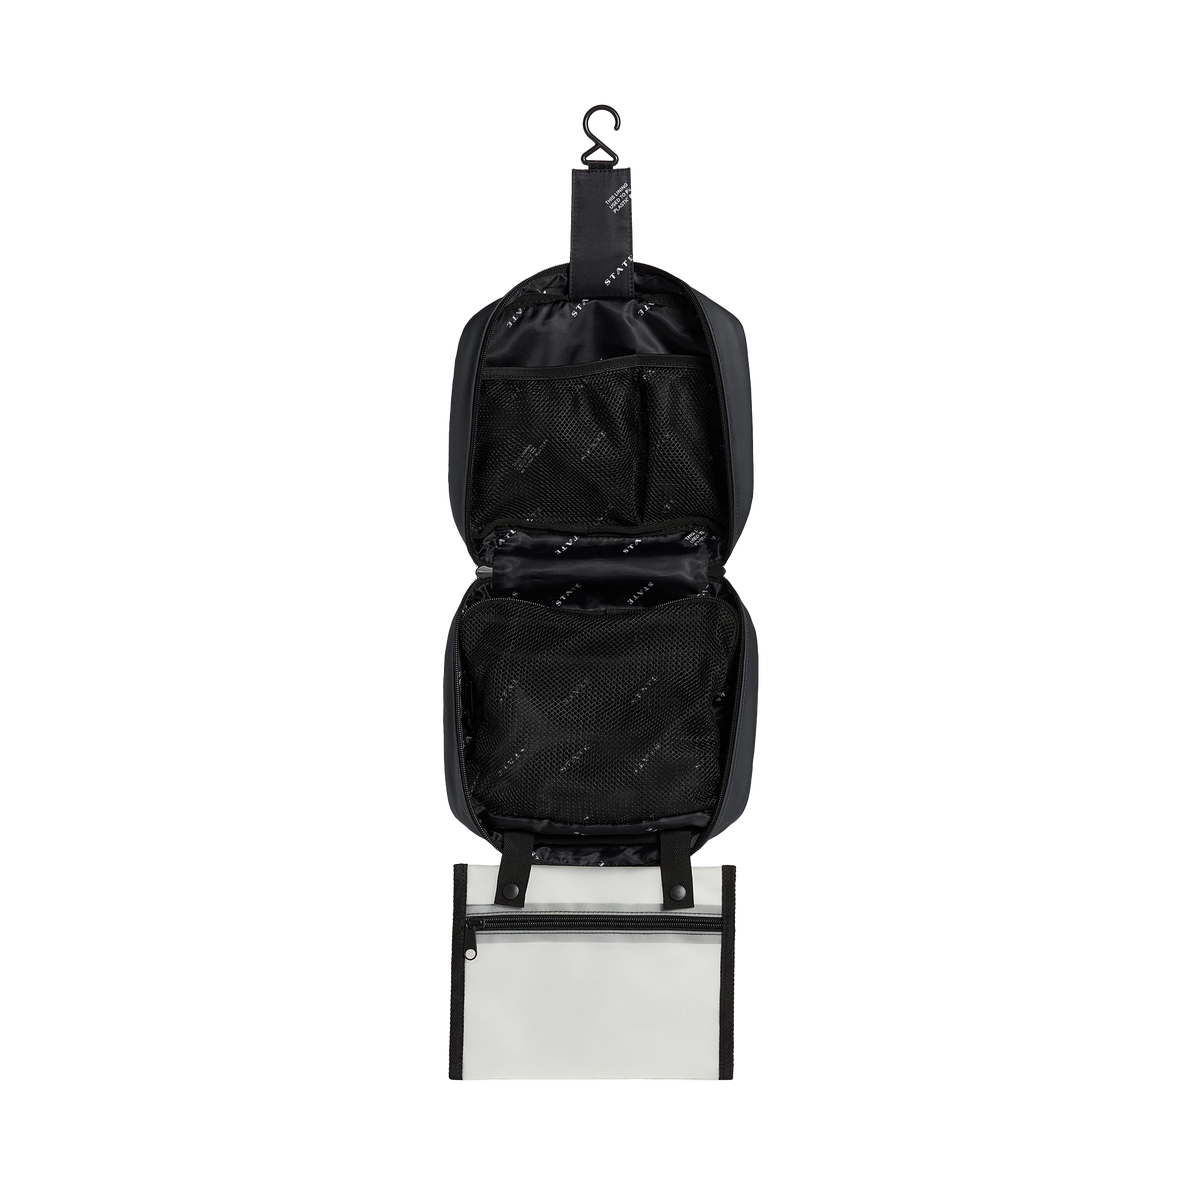 State Bags Bensen Dopp Kit Nylon Black Multi